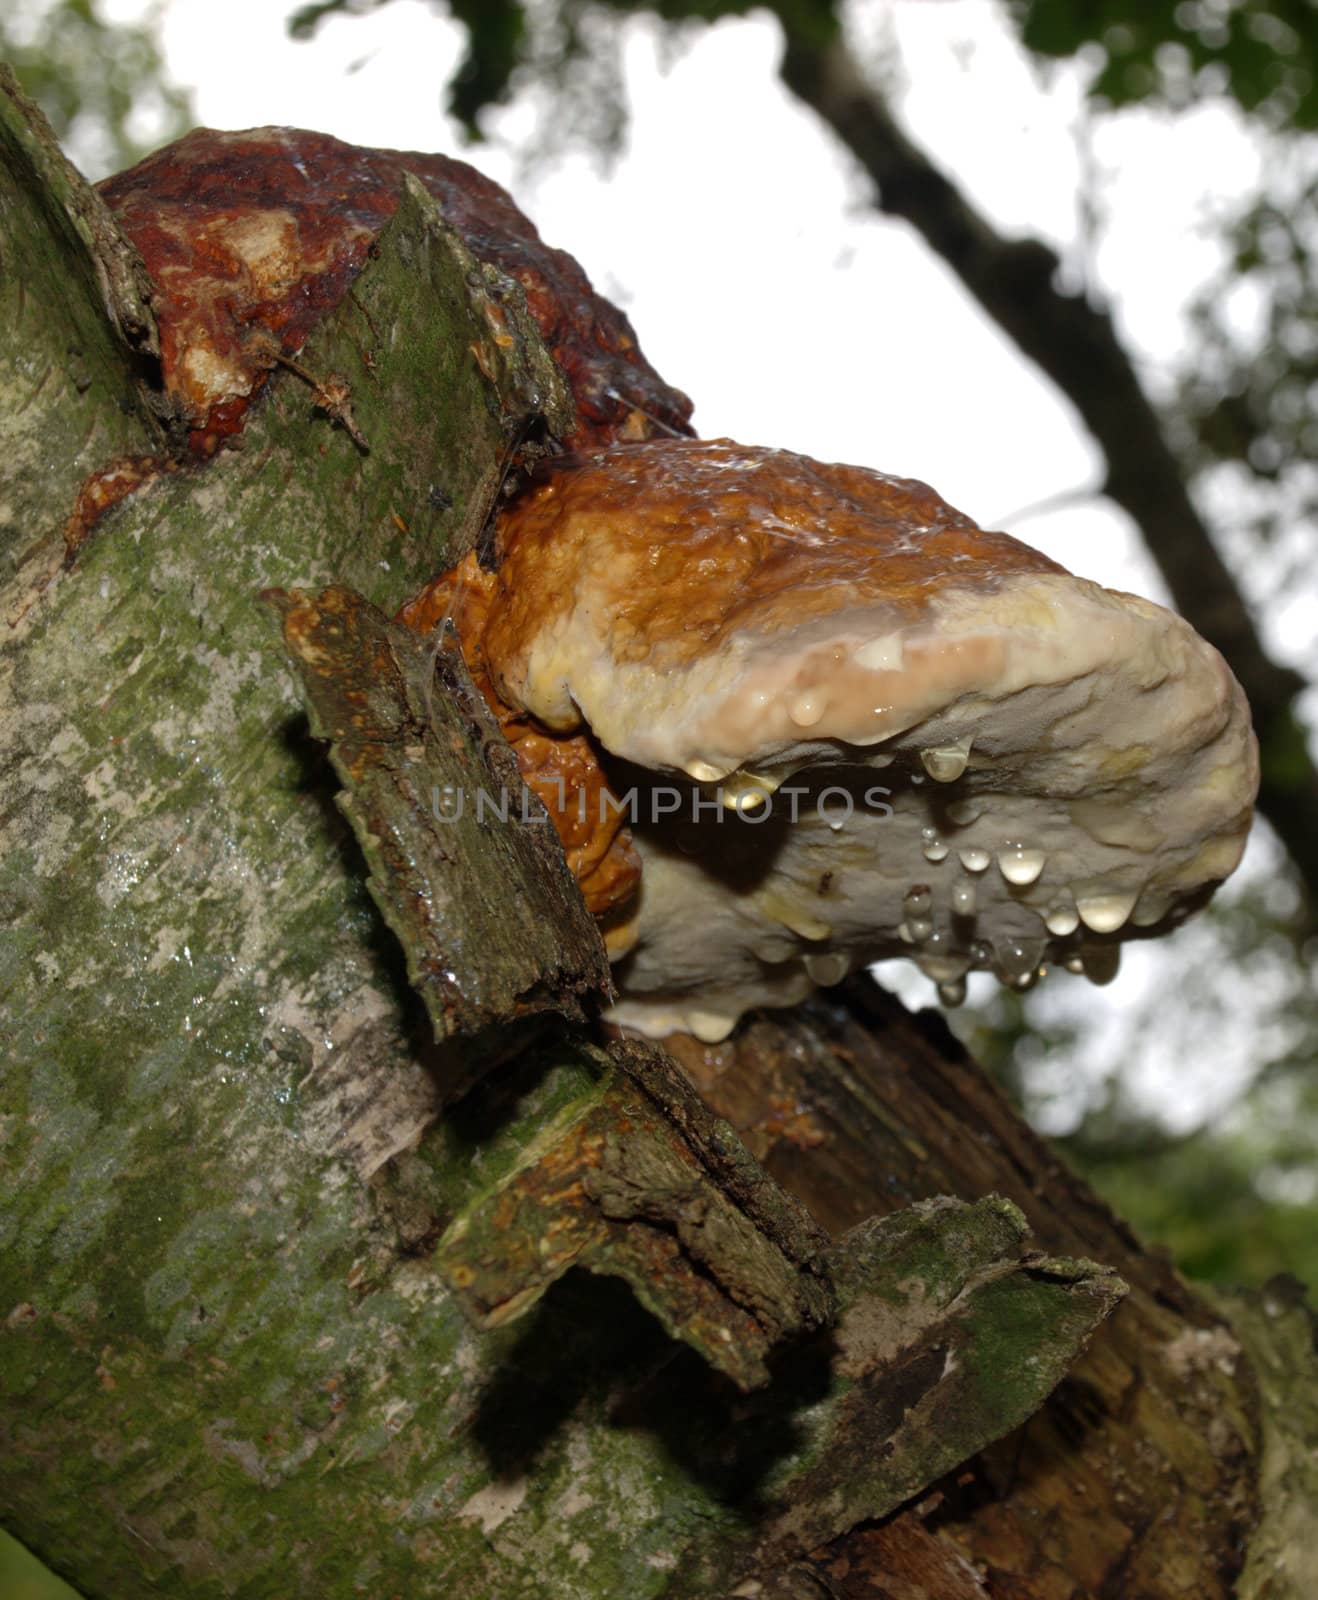 dewy wood-decaying mushroom on birch
